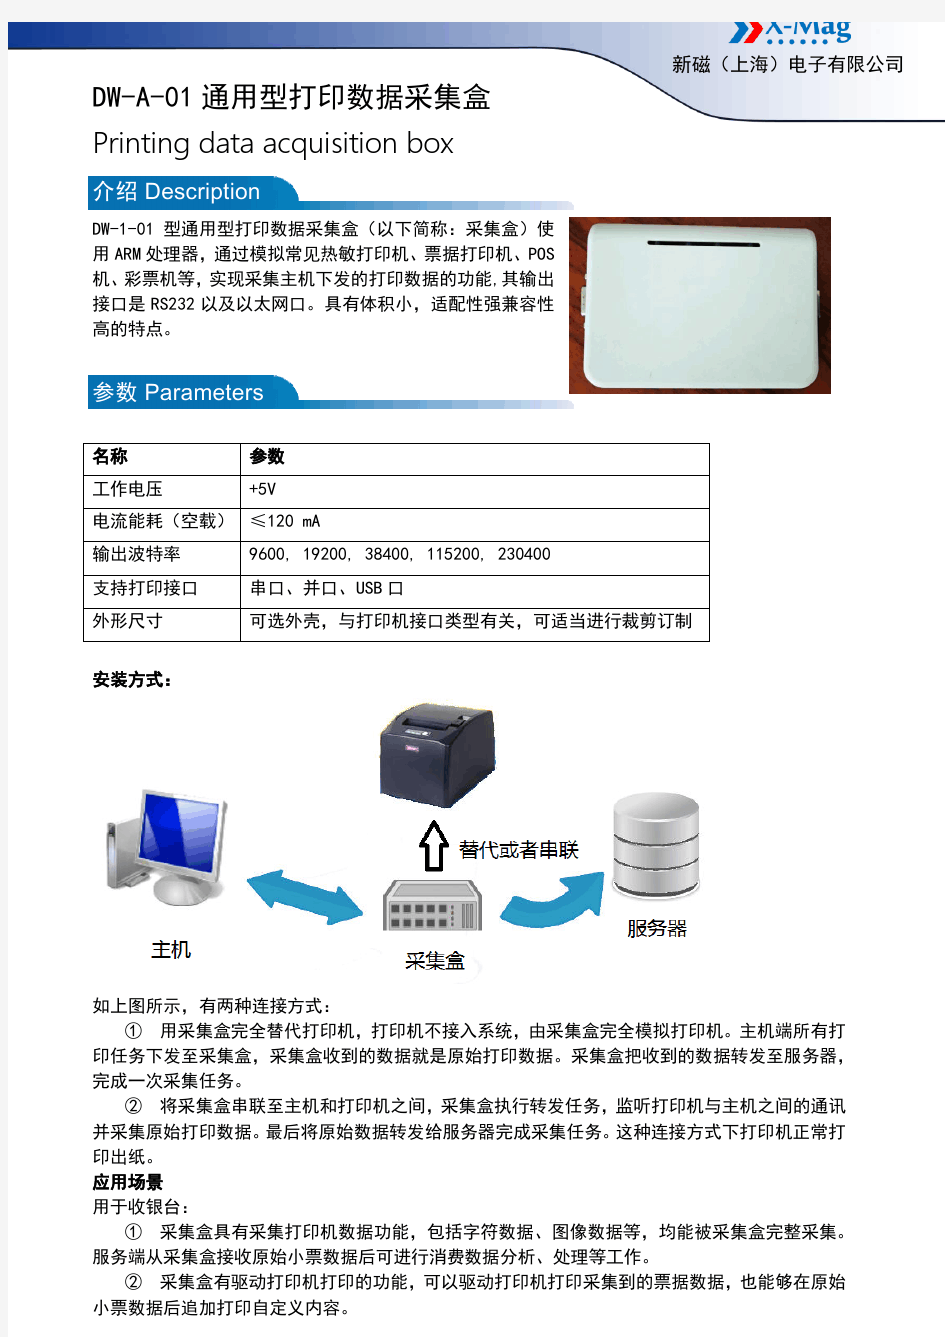 DW-A-01 通用型打印数据采集卡产品手册2